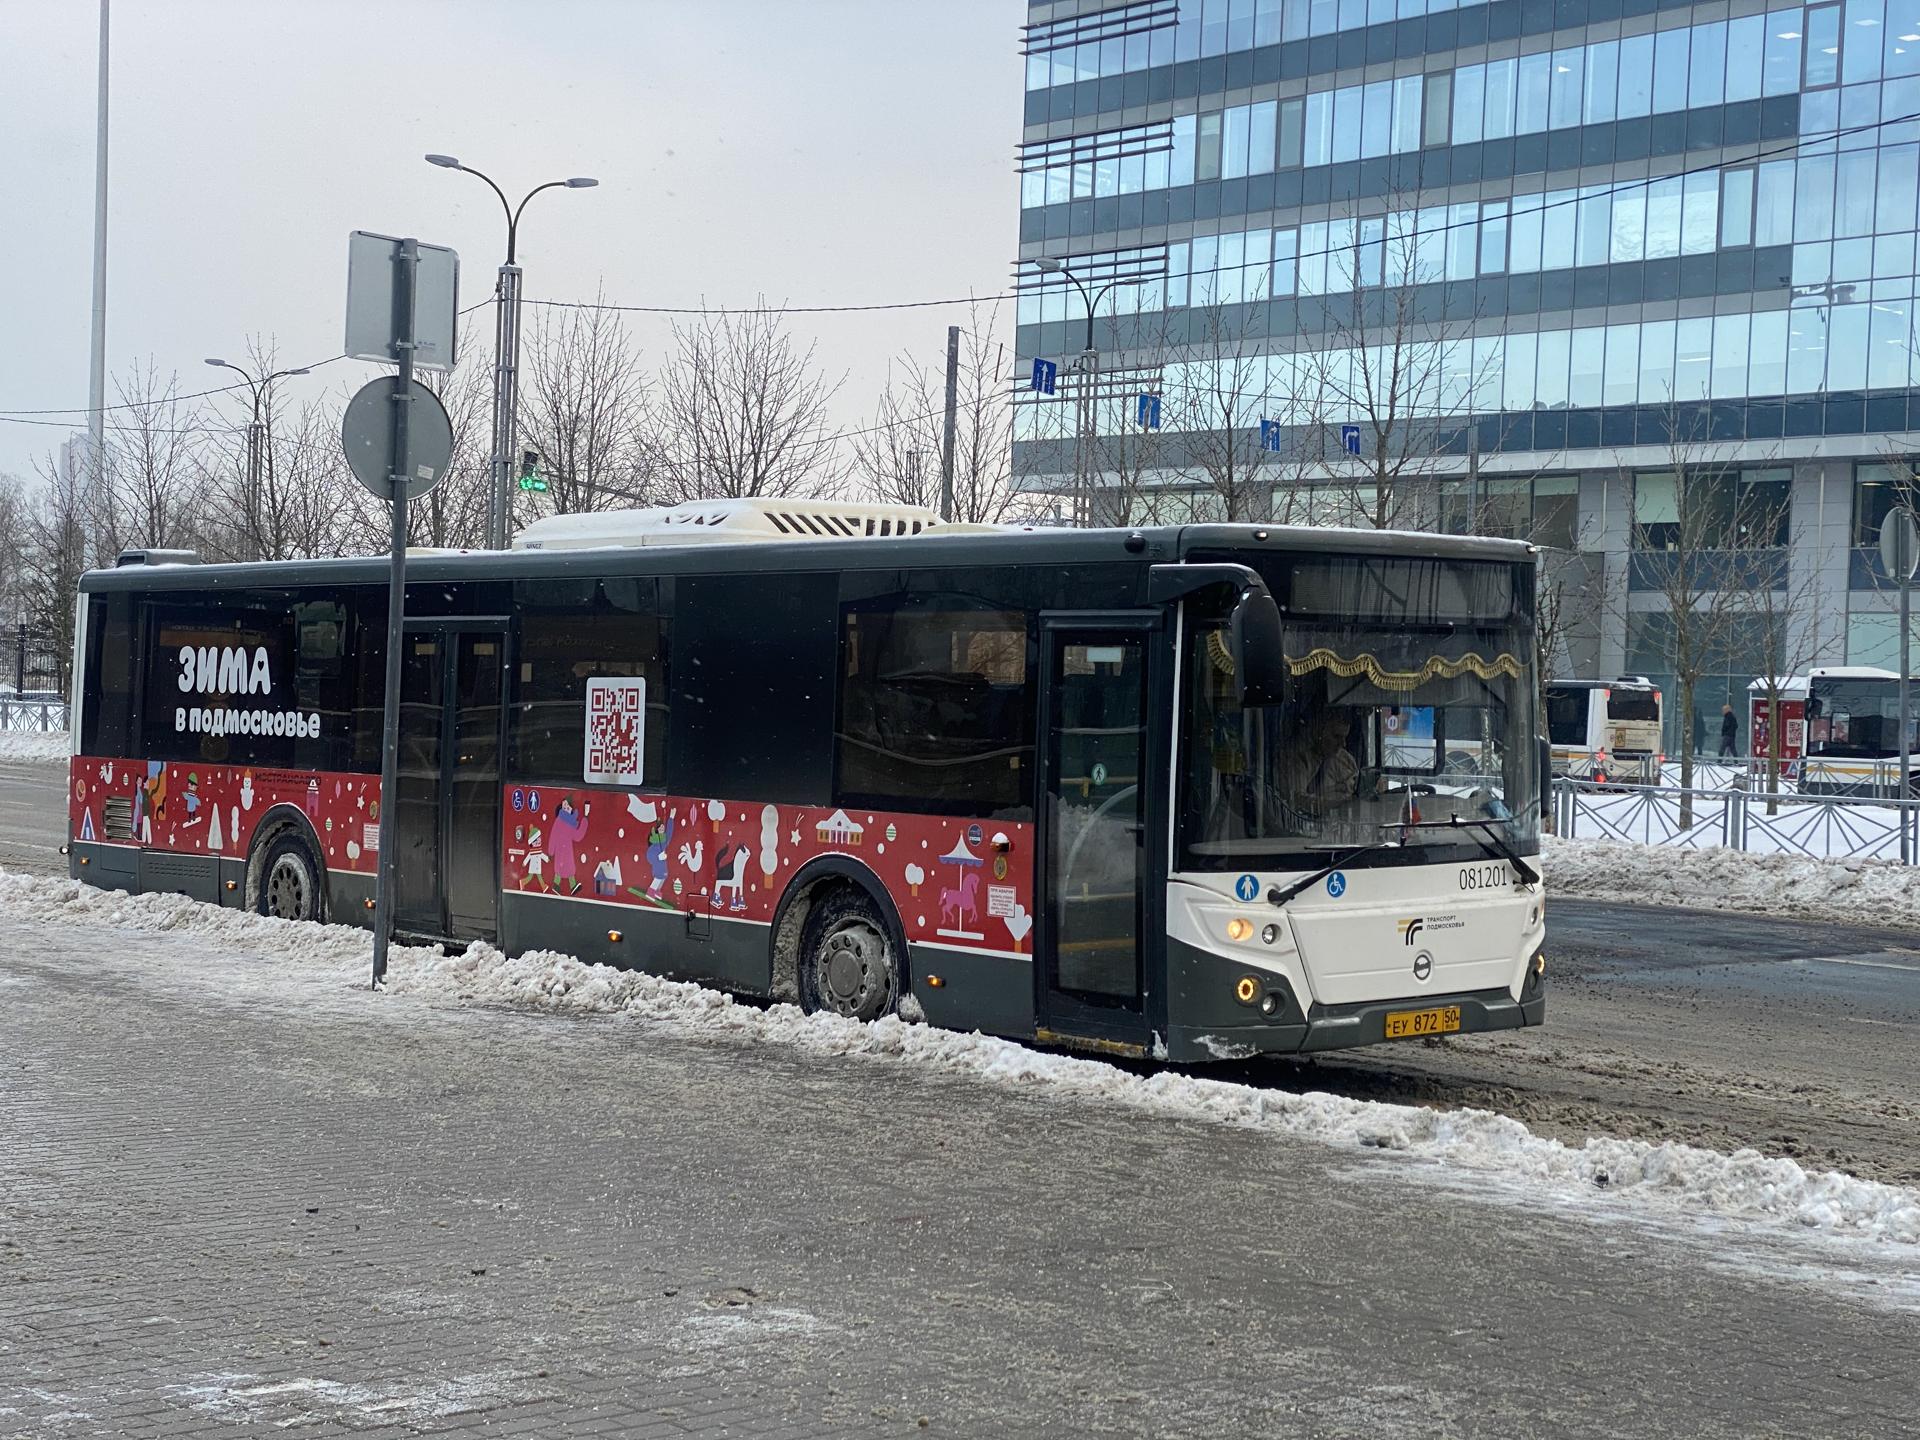 Количество поездок на автобусах в Звенигороде превысило полмиллиона с начала года